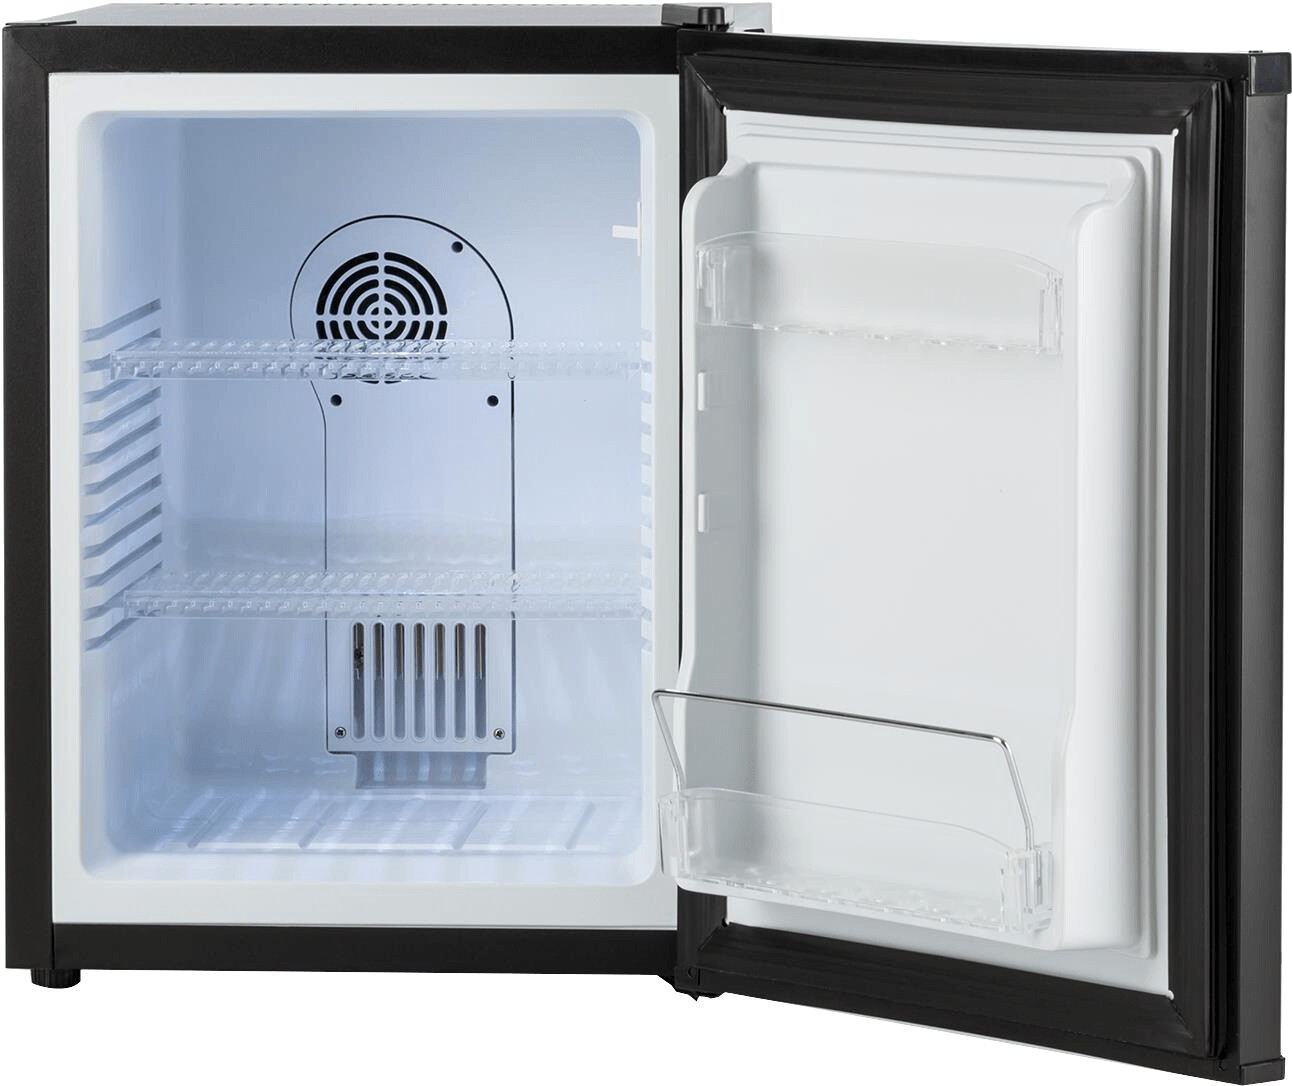 Klarstein Mini réfrigérateur Happy Hour Minibar 32 l au meilleur prix sur